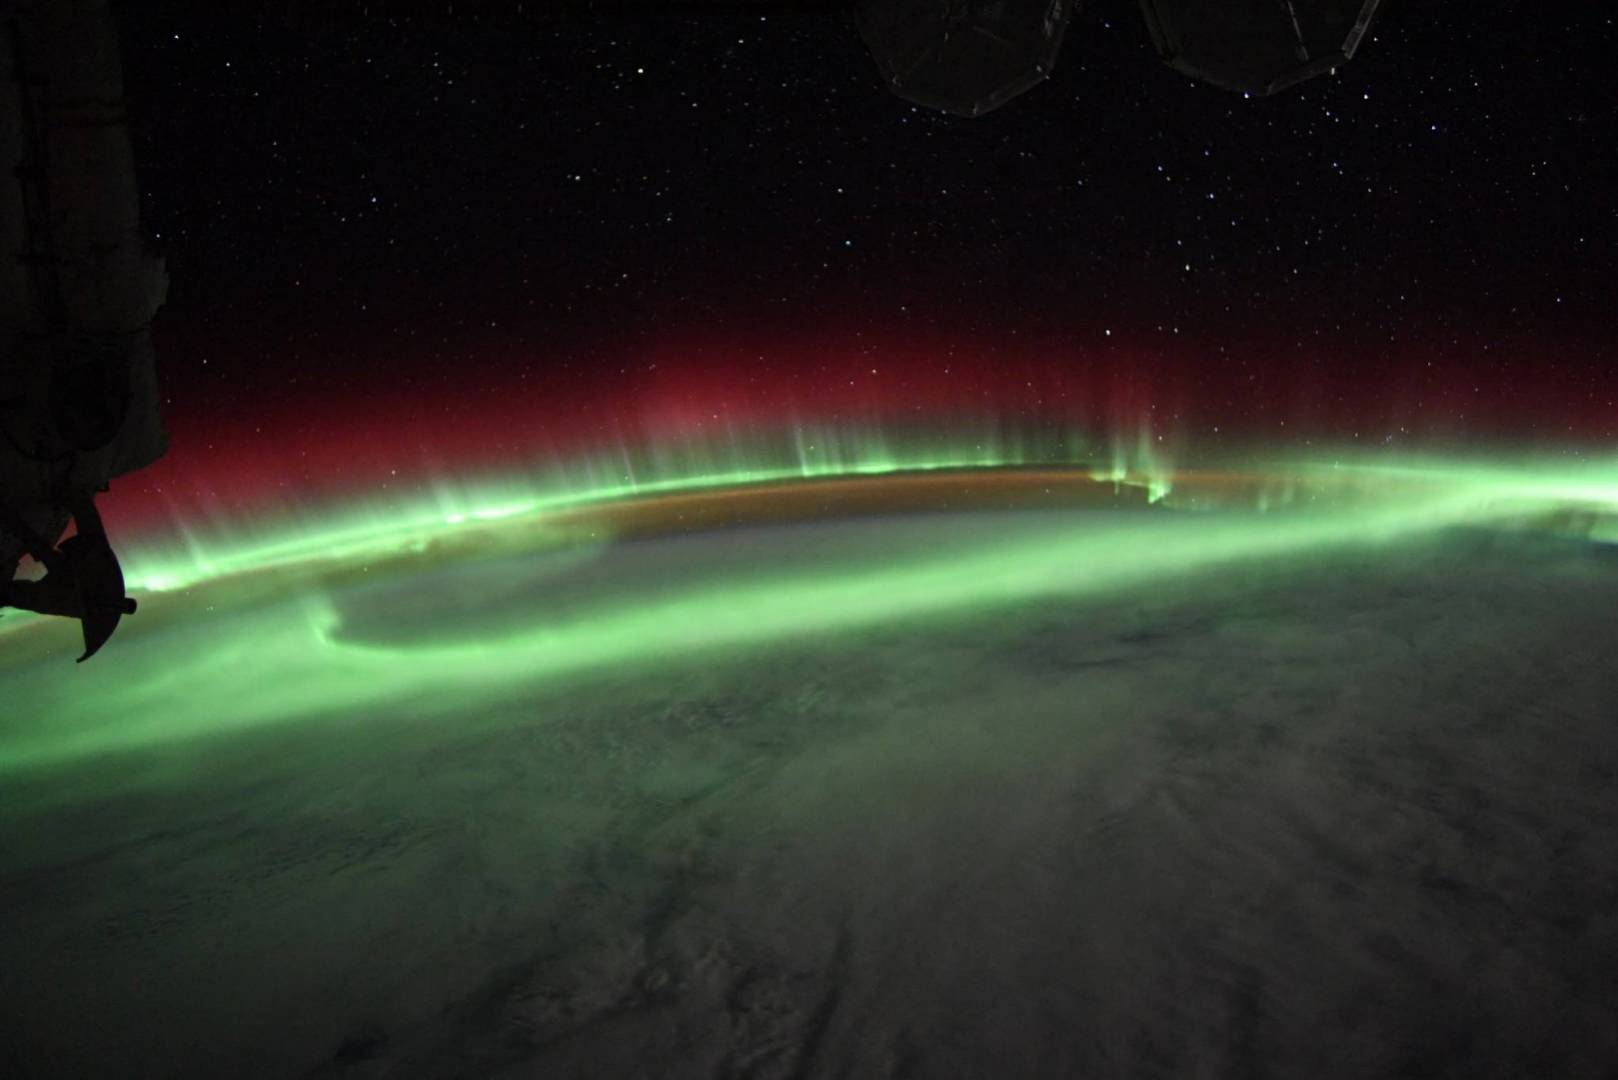 رائد فضاء يلتقط صور مذهلة للشفق القطبي من محطة الفضاء الدولية